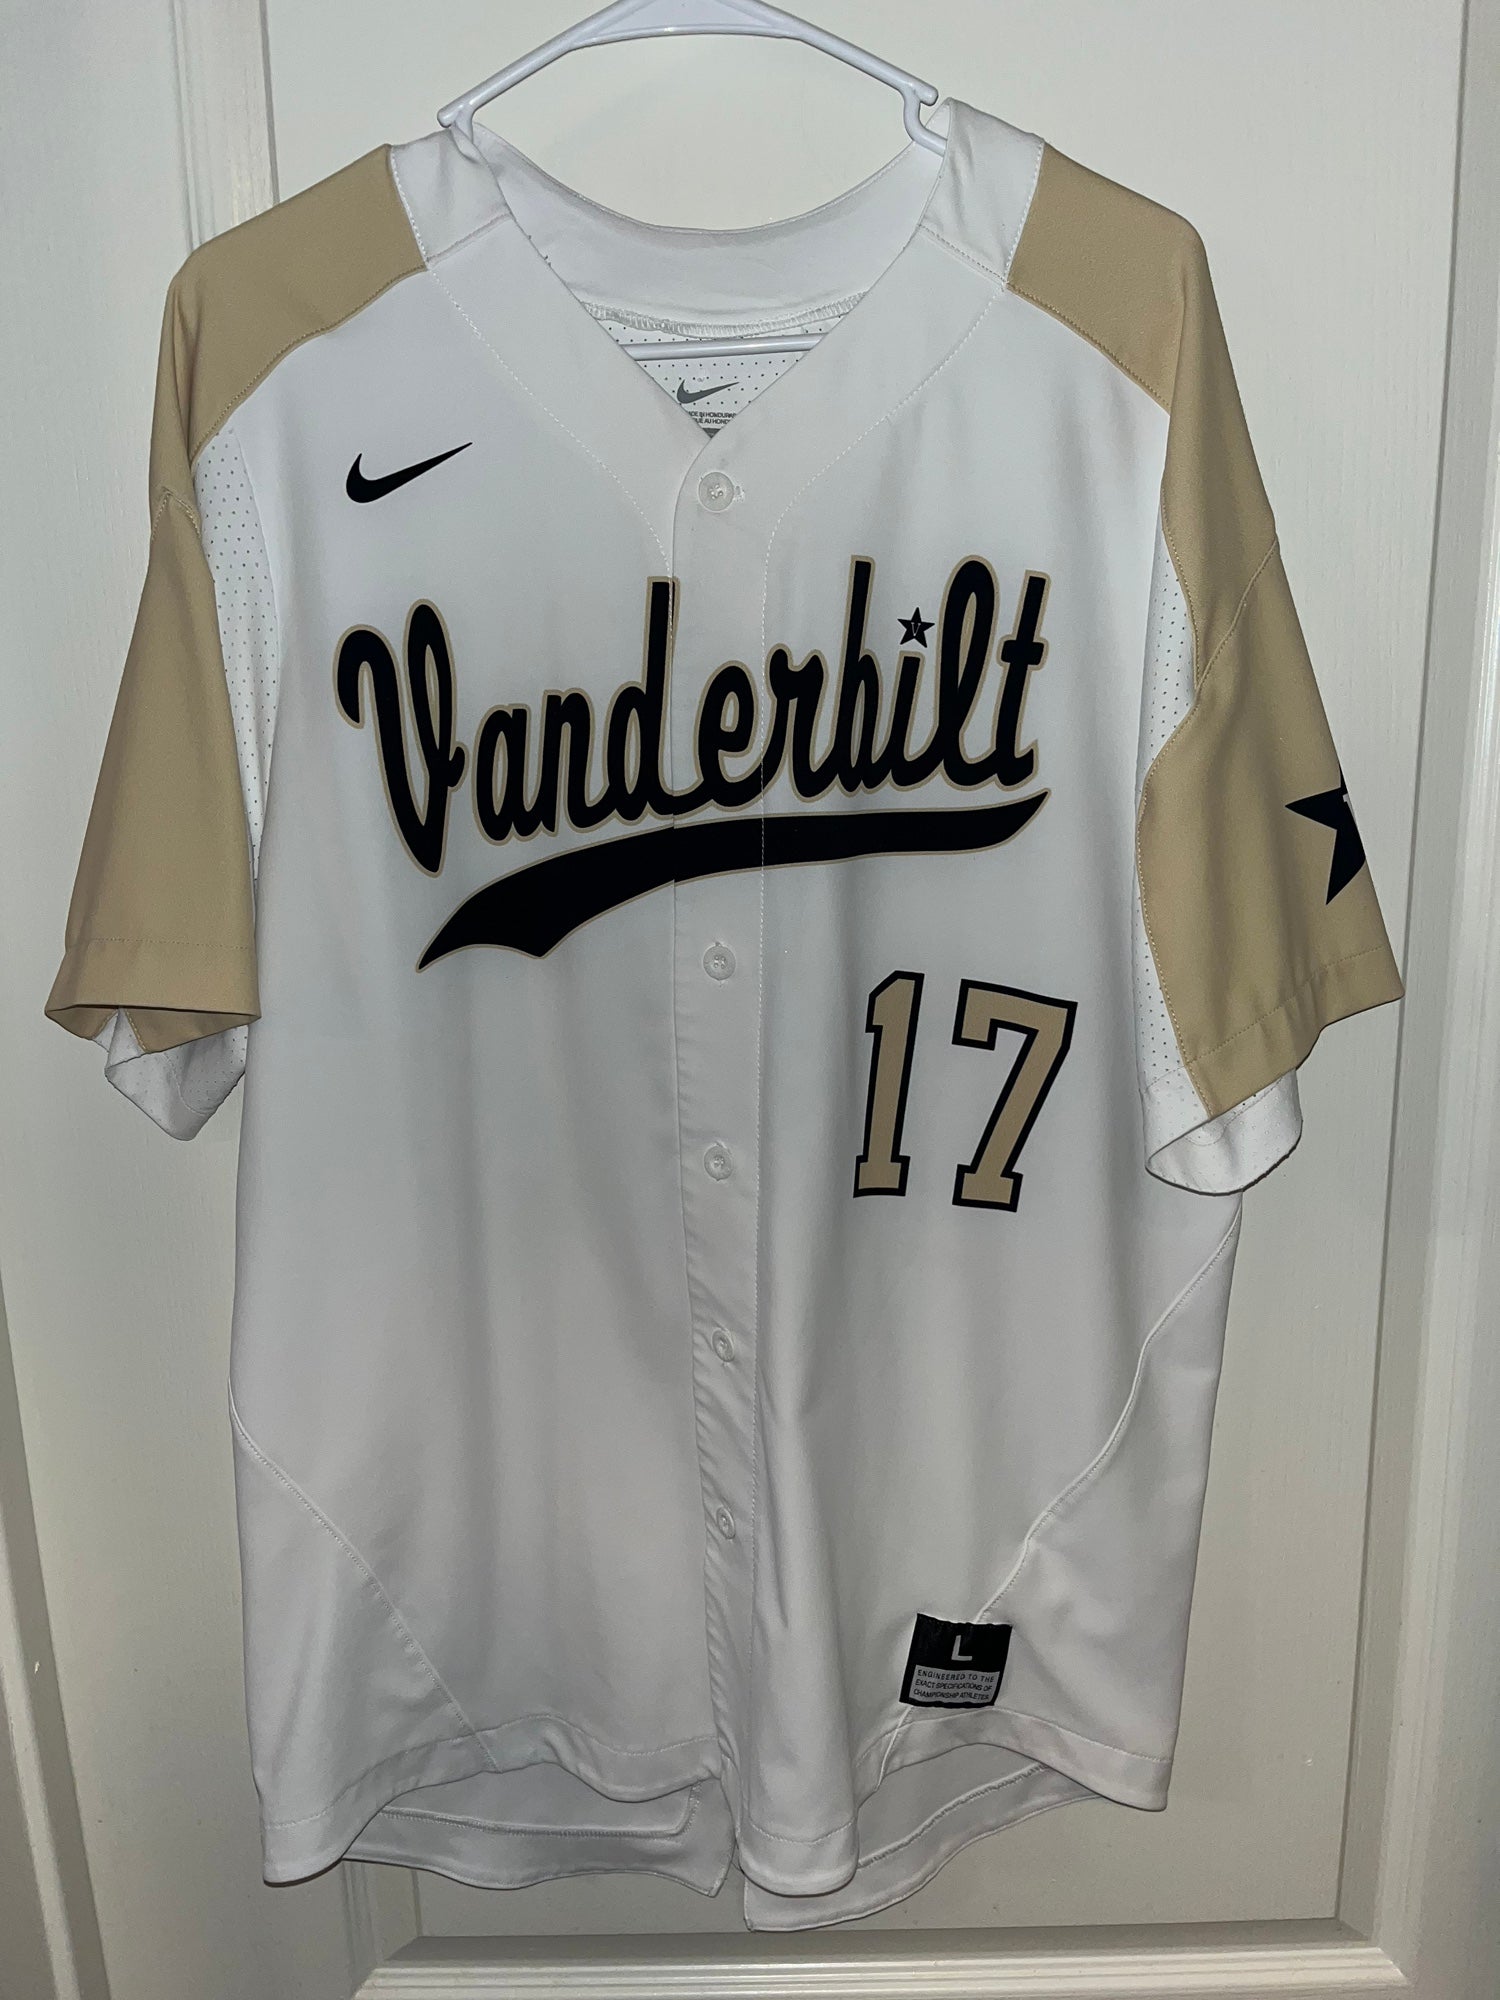 Vanderbilt  Baseball outfit, Vanderbilt football, Vanderbilt